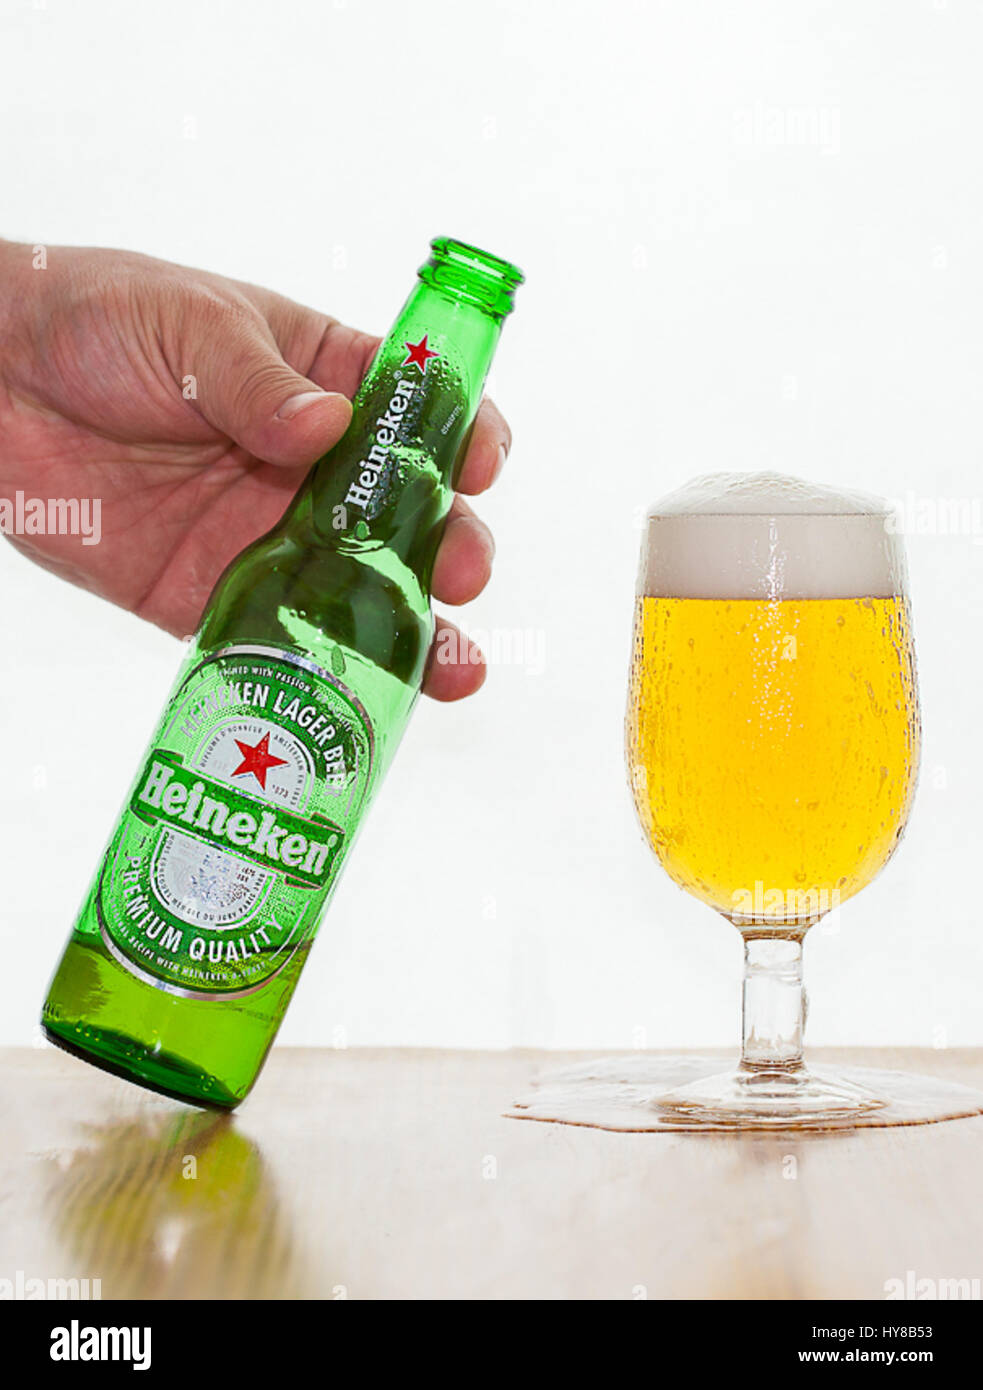 Heineken. Beer. Drink. Stock Photo